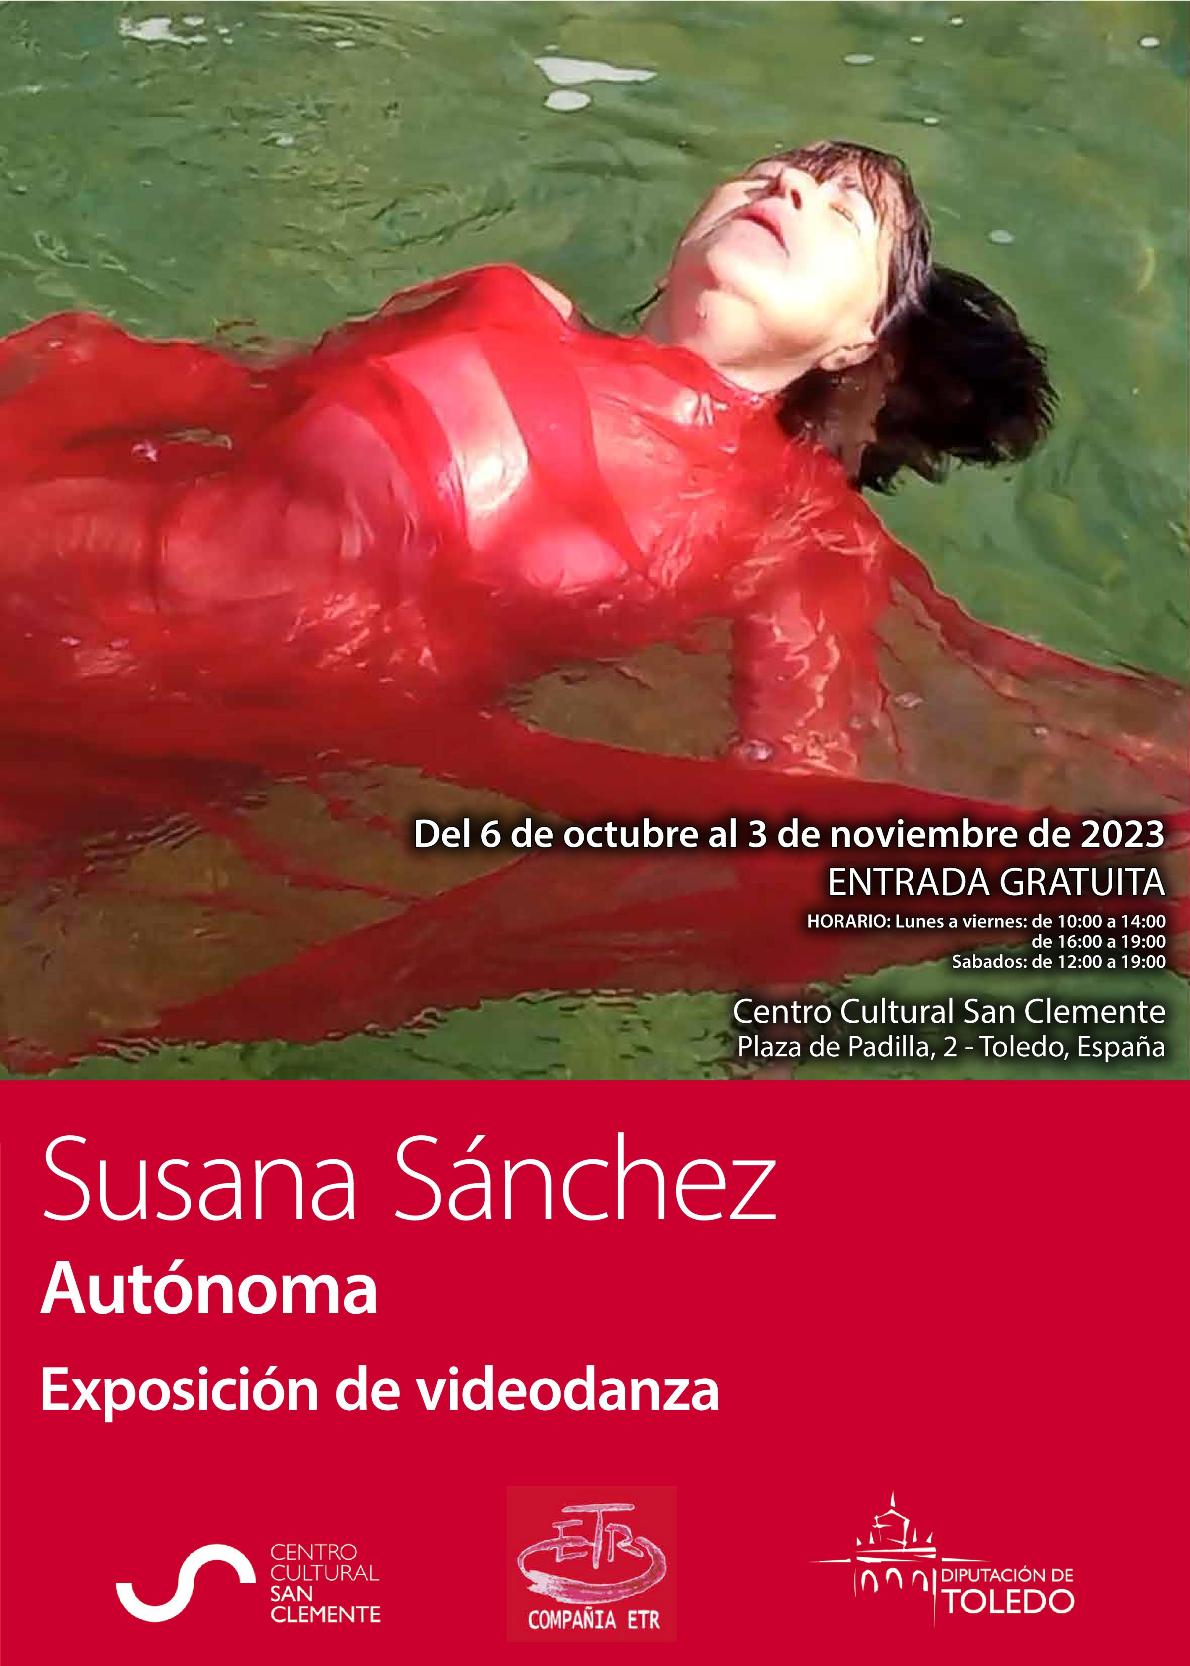 7. Susana Sánchez